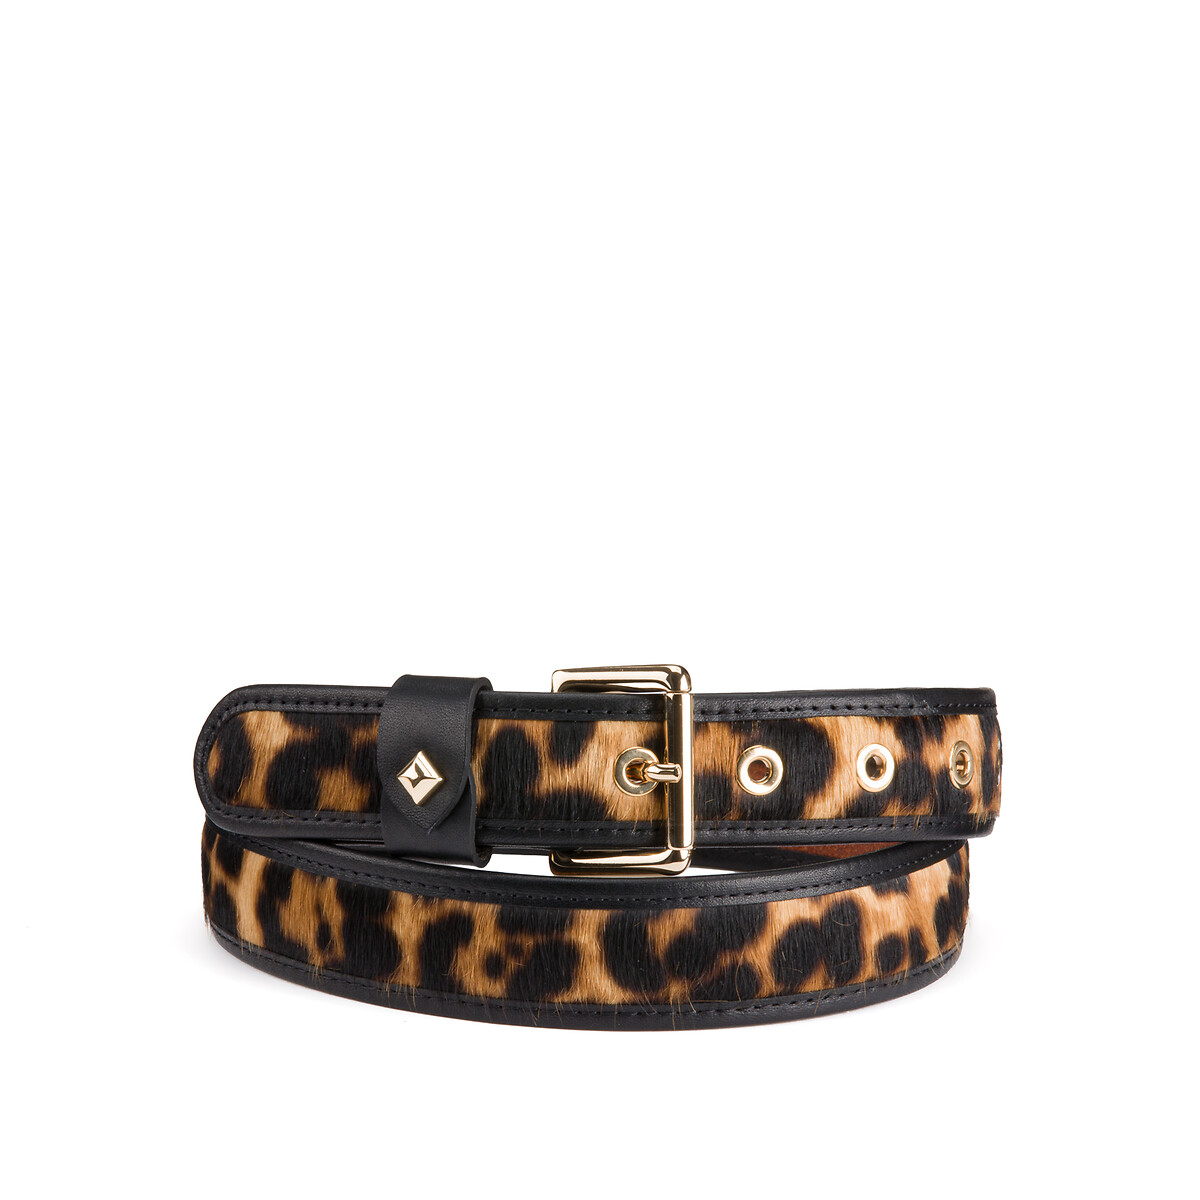 La Turenne Leather Belt in Leopard Print